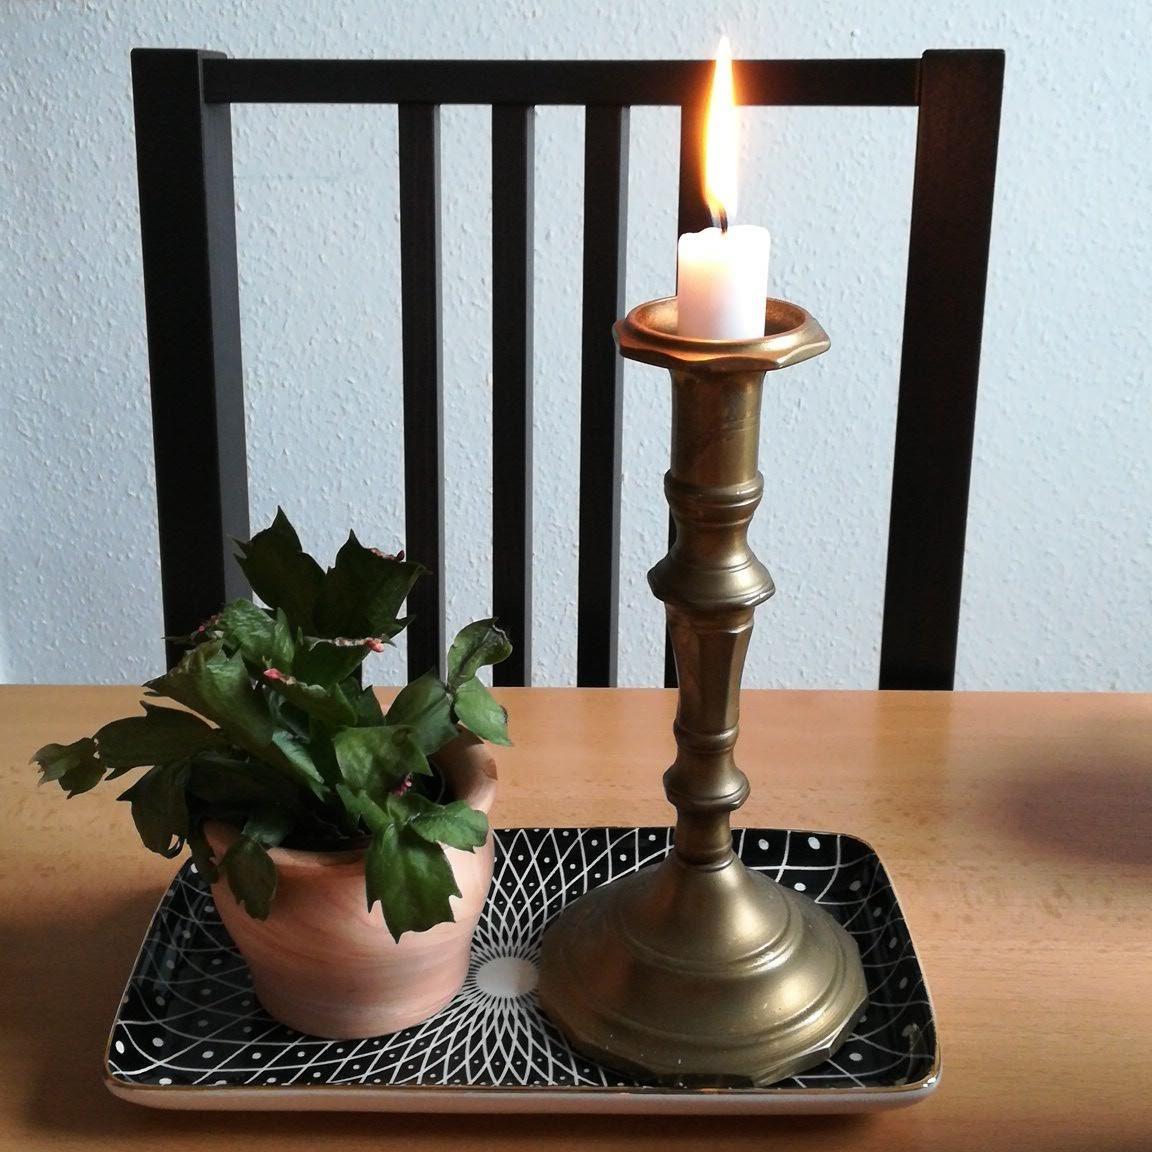 #candle #candlelight #mittagessen #dekoliebe #nanunana #kerzenständer #gold #kleinepflanze #kaktus 